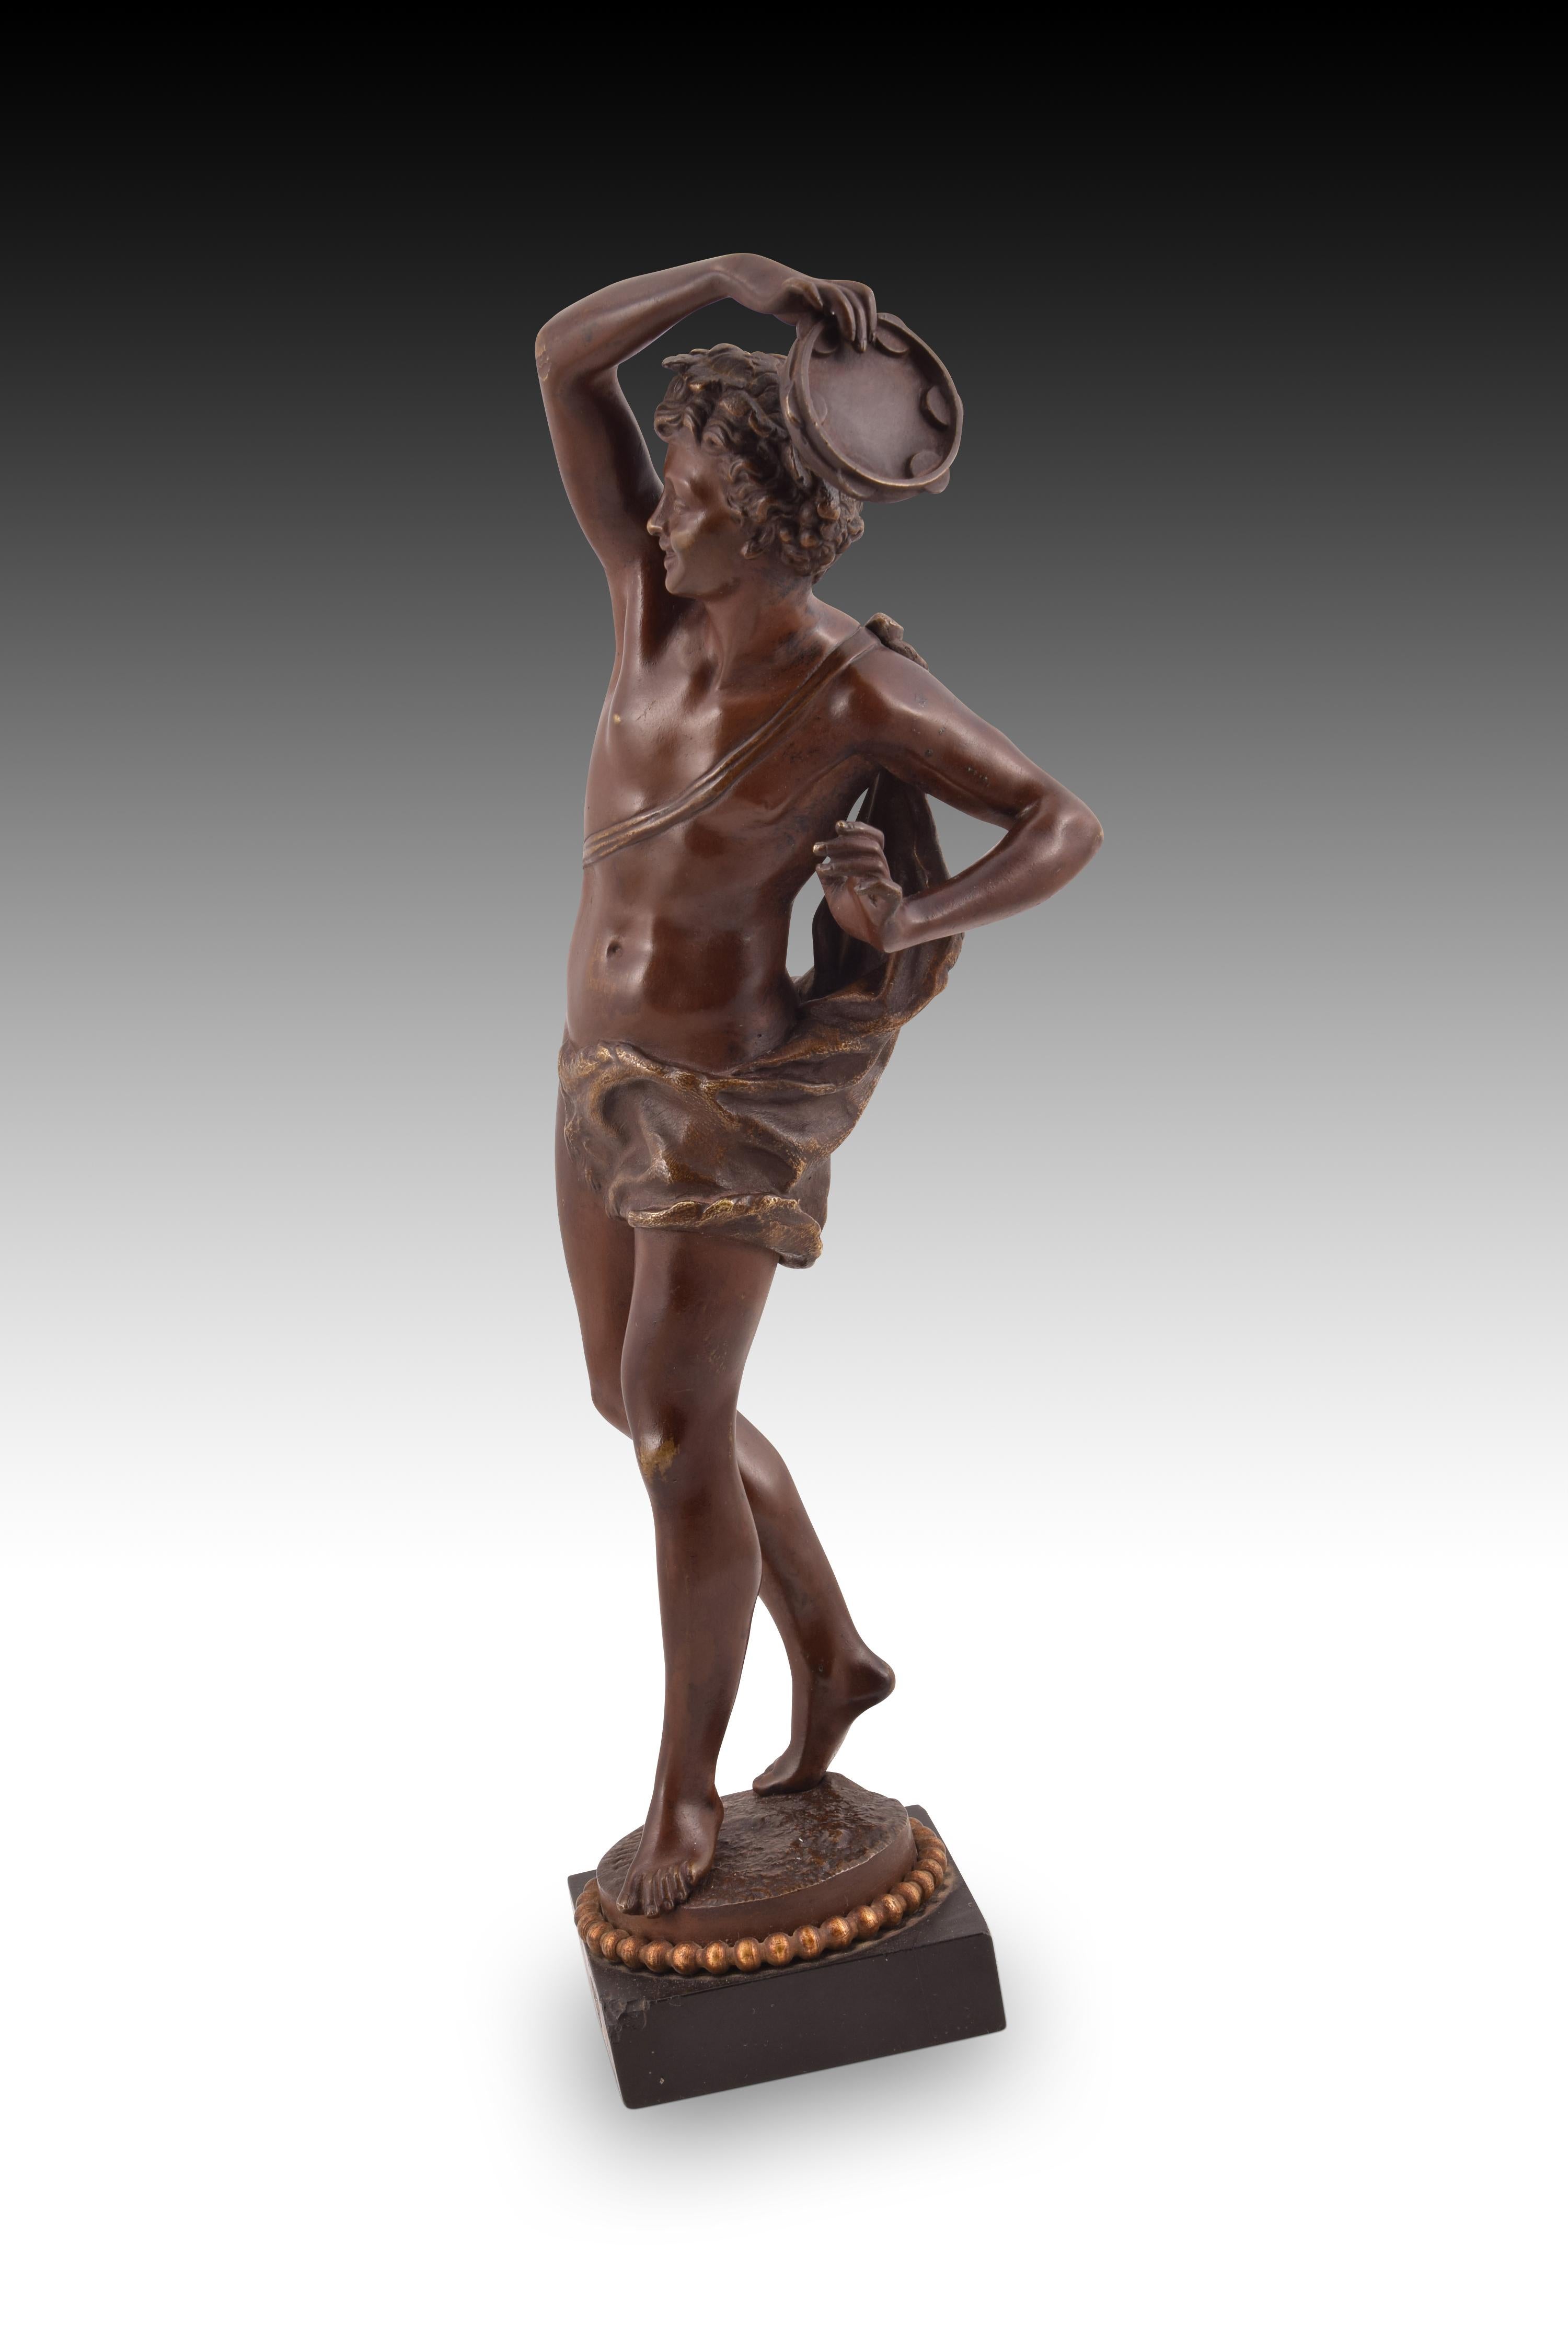 Bronzeskulptur Harmony. RANCOULET, Ernest (Frankreich, 1870-1915).
 Sie hat kleine Mängel. 
Auf einem quadratischen Sockel befindet sich eine runde Form mit einer Perlenkette und einem felsigen Abschluss an der Spitze, die als Stütze für eine junge,